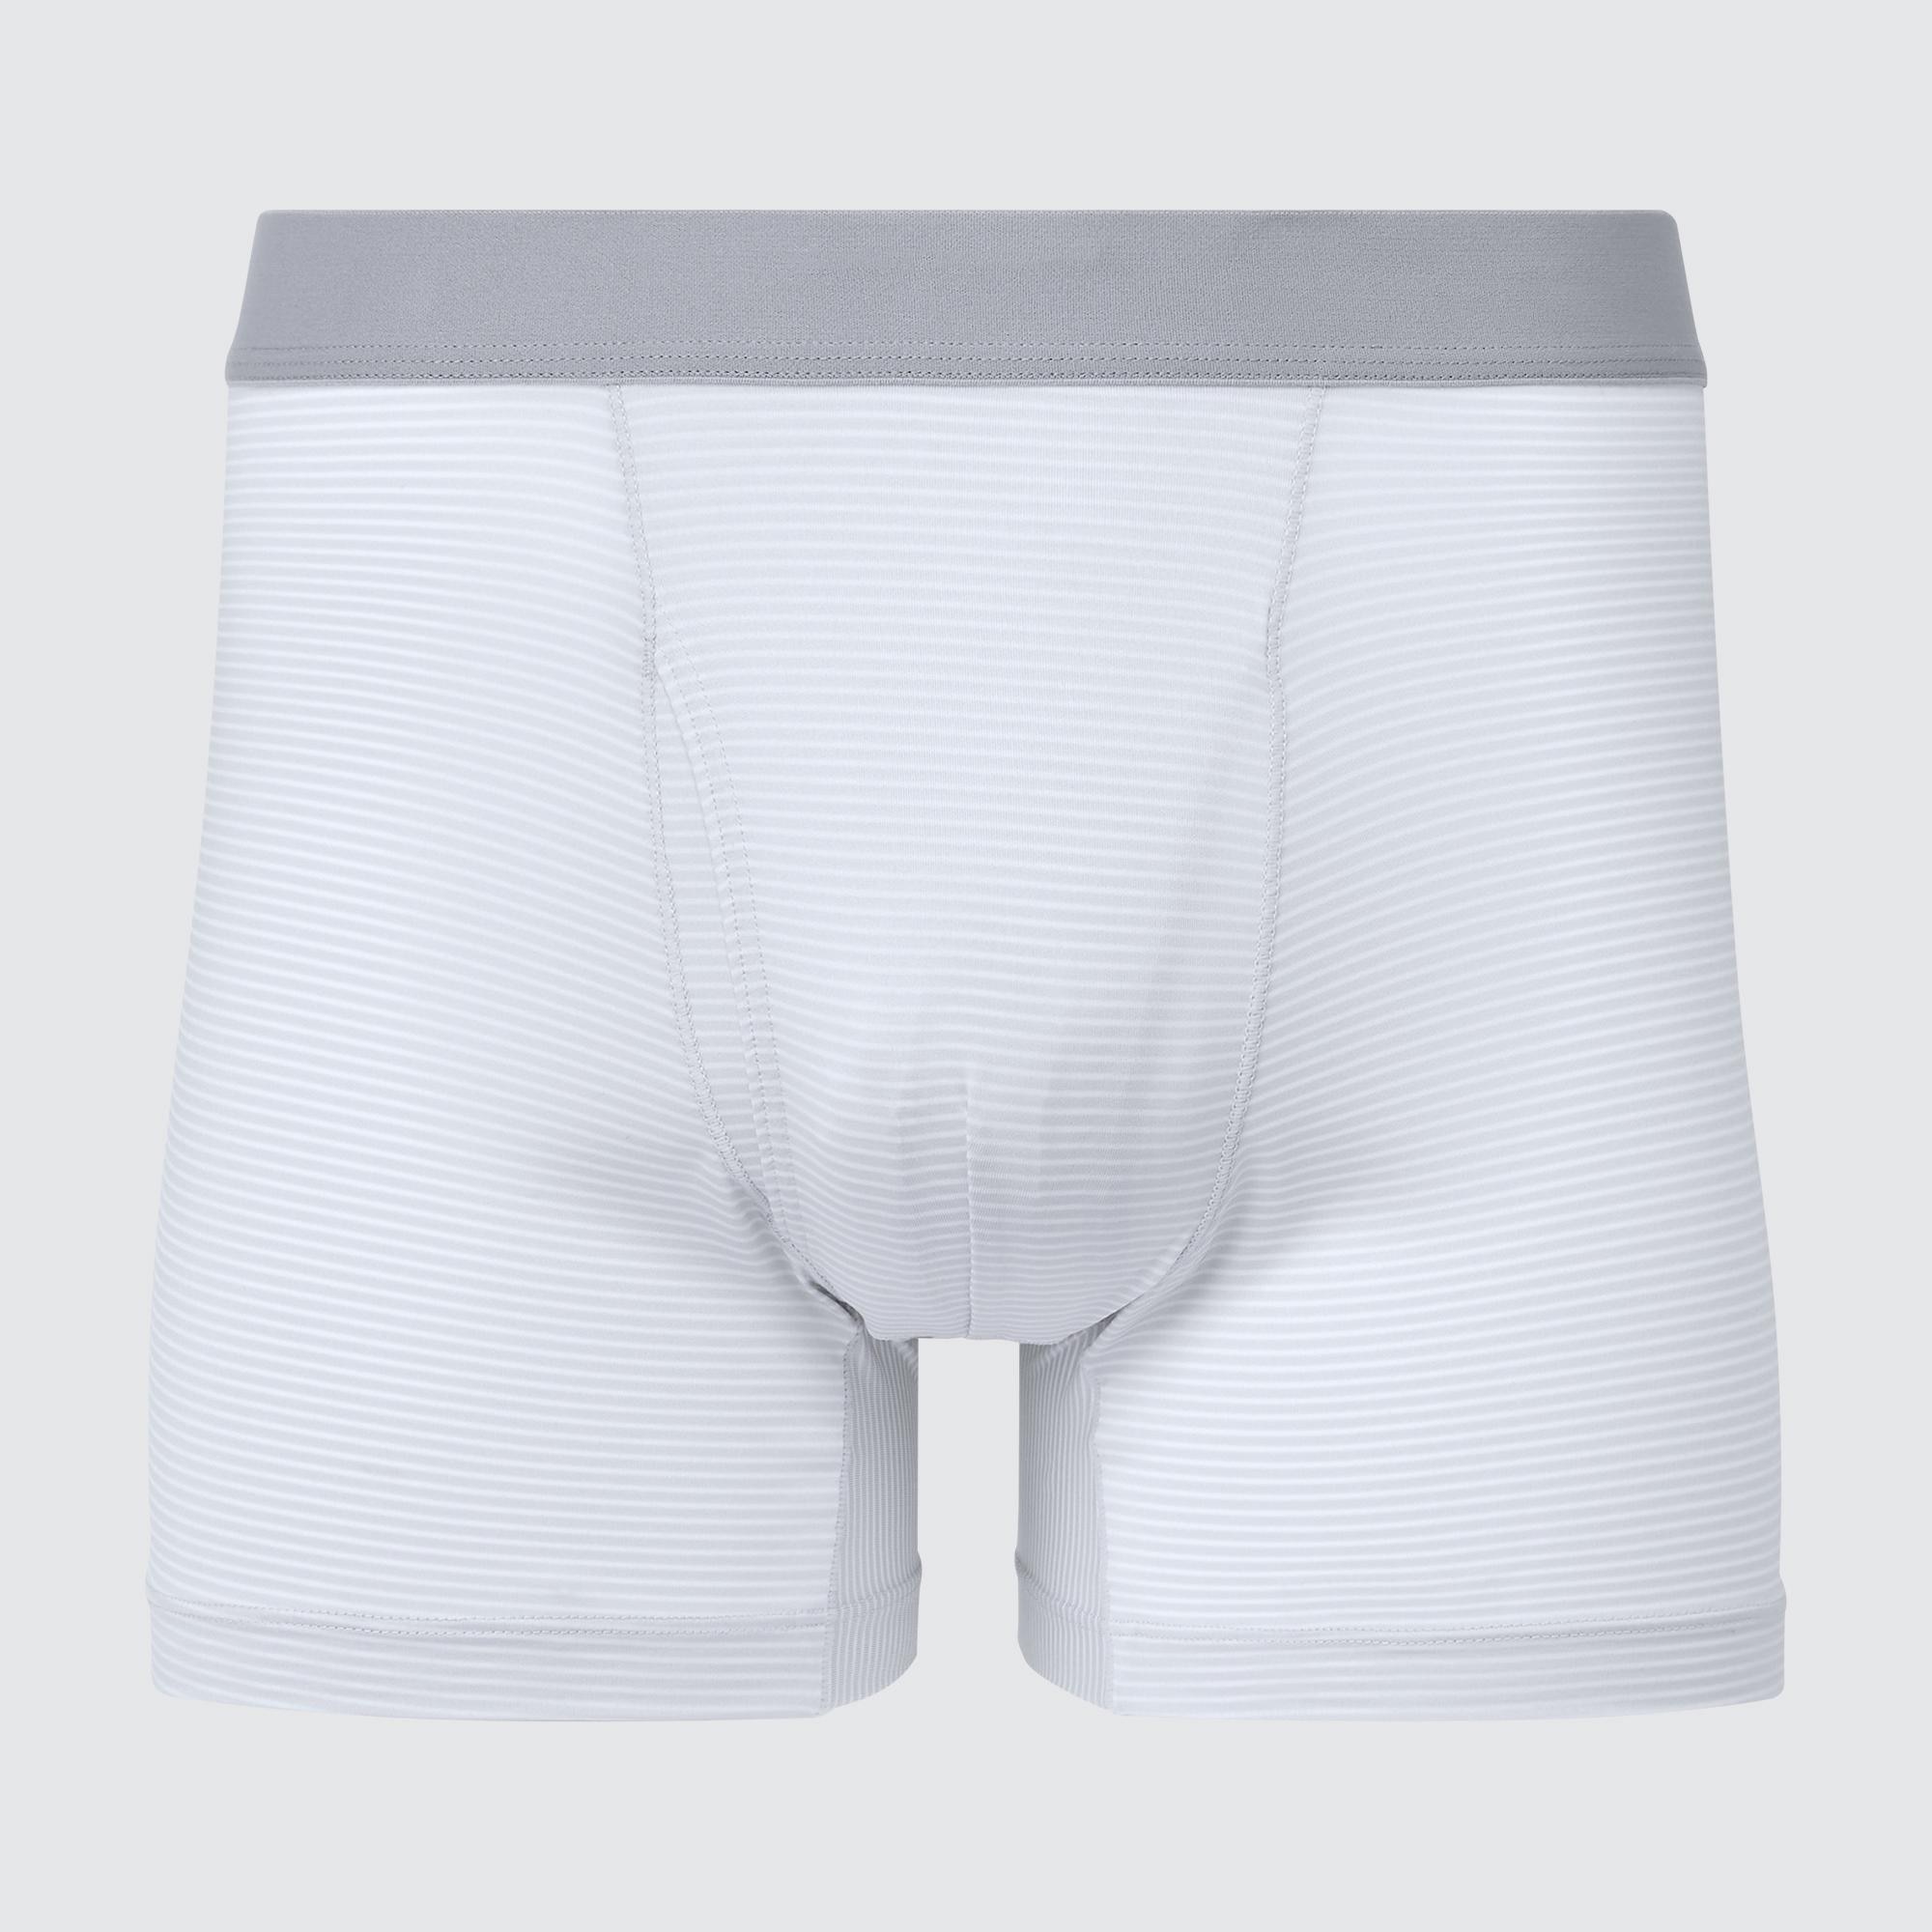 Uniqlo Mens Underwear  Airism Printed Boxer Briefs WINE * Moticommodity